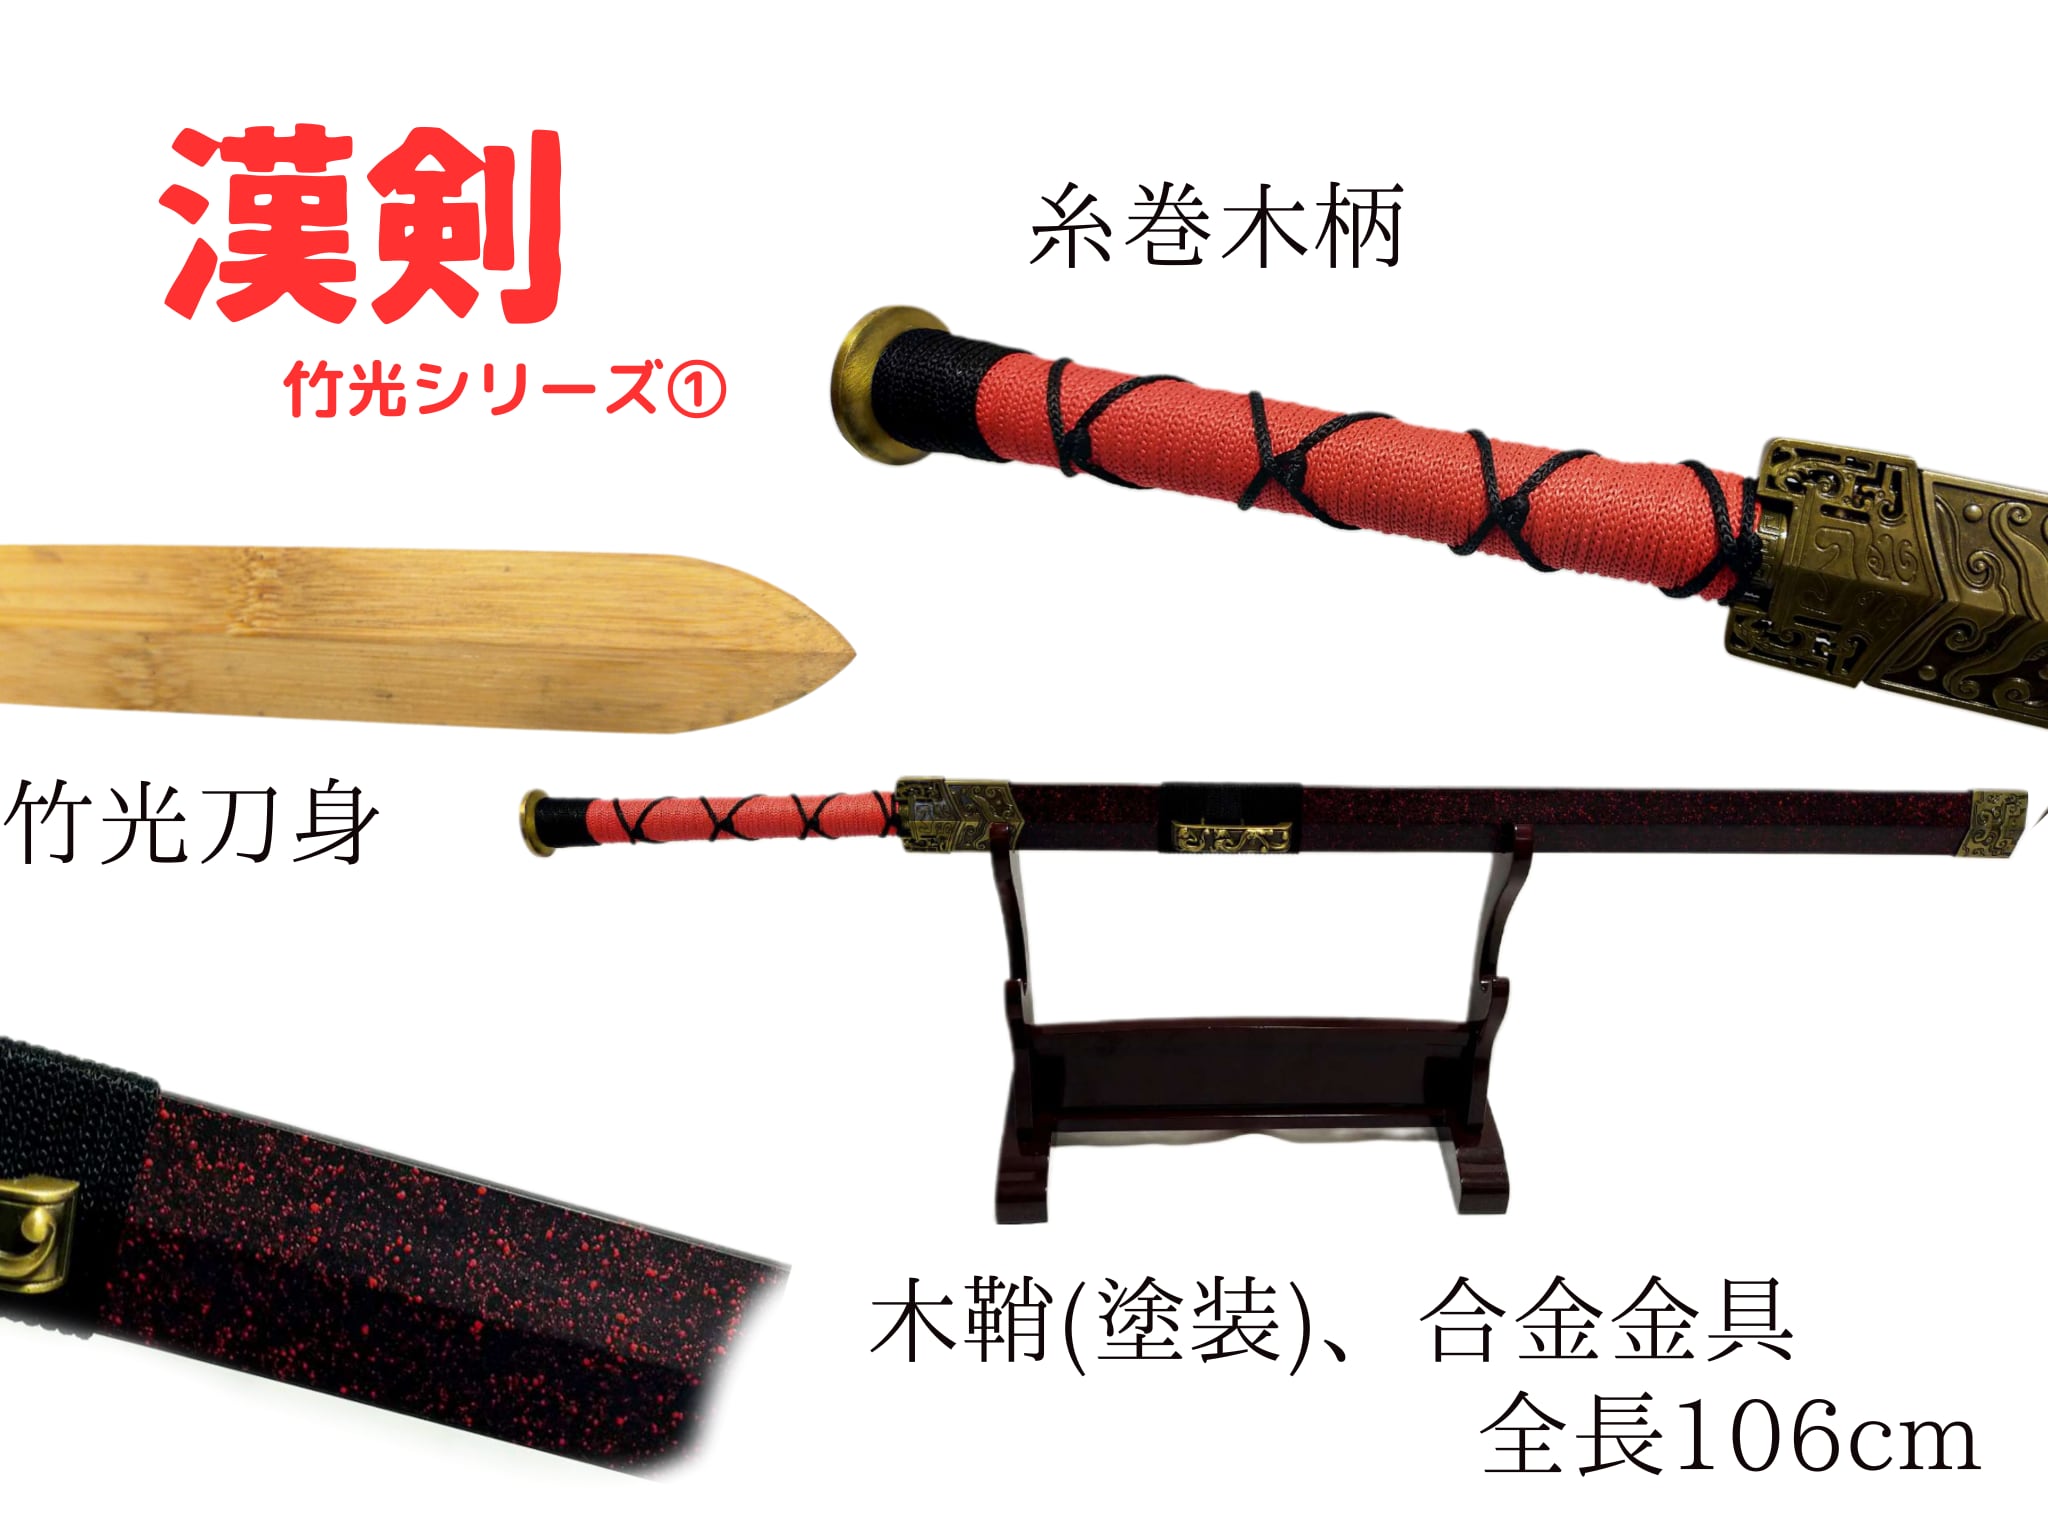 古代中国の剣(赤石目) 竹光刀身 直剣 模造刀 模擬刀 演劇小道具 高級